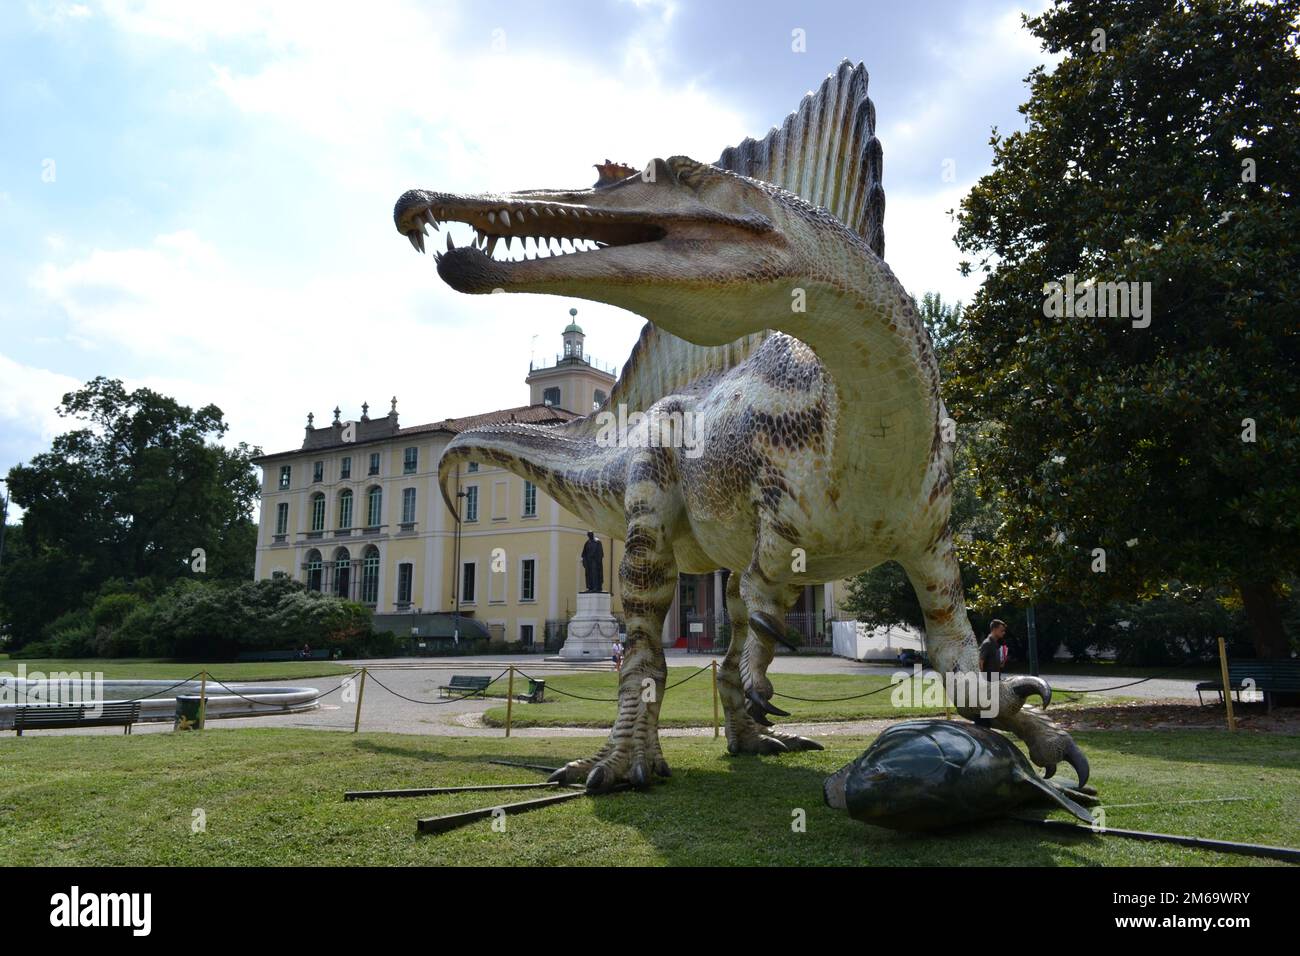 Modèle grandeur nature du dinosaure Spinosaurus, le plus grand dinosaure prédateur jamais existé et le premier dinosaure nageant exposé dans les jardins publics. Banque D'Images